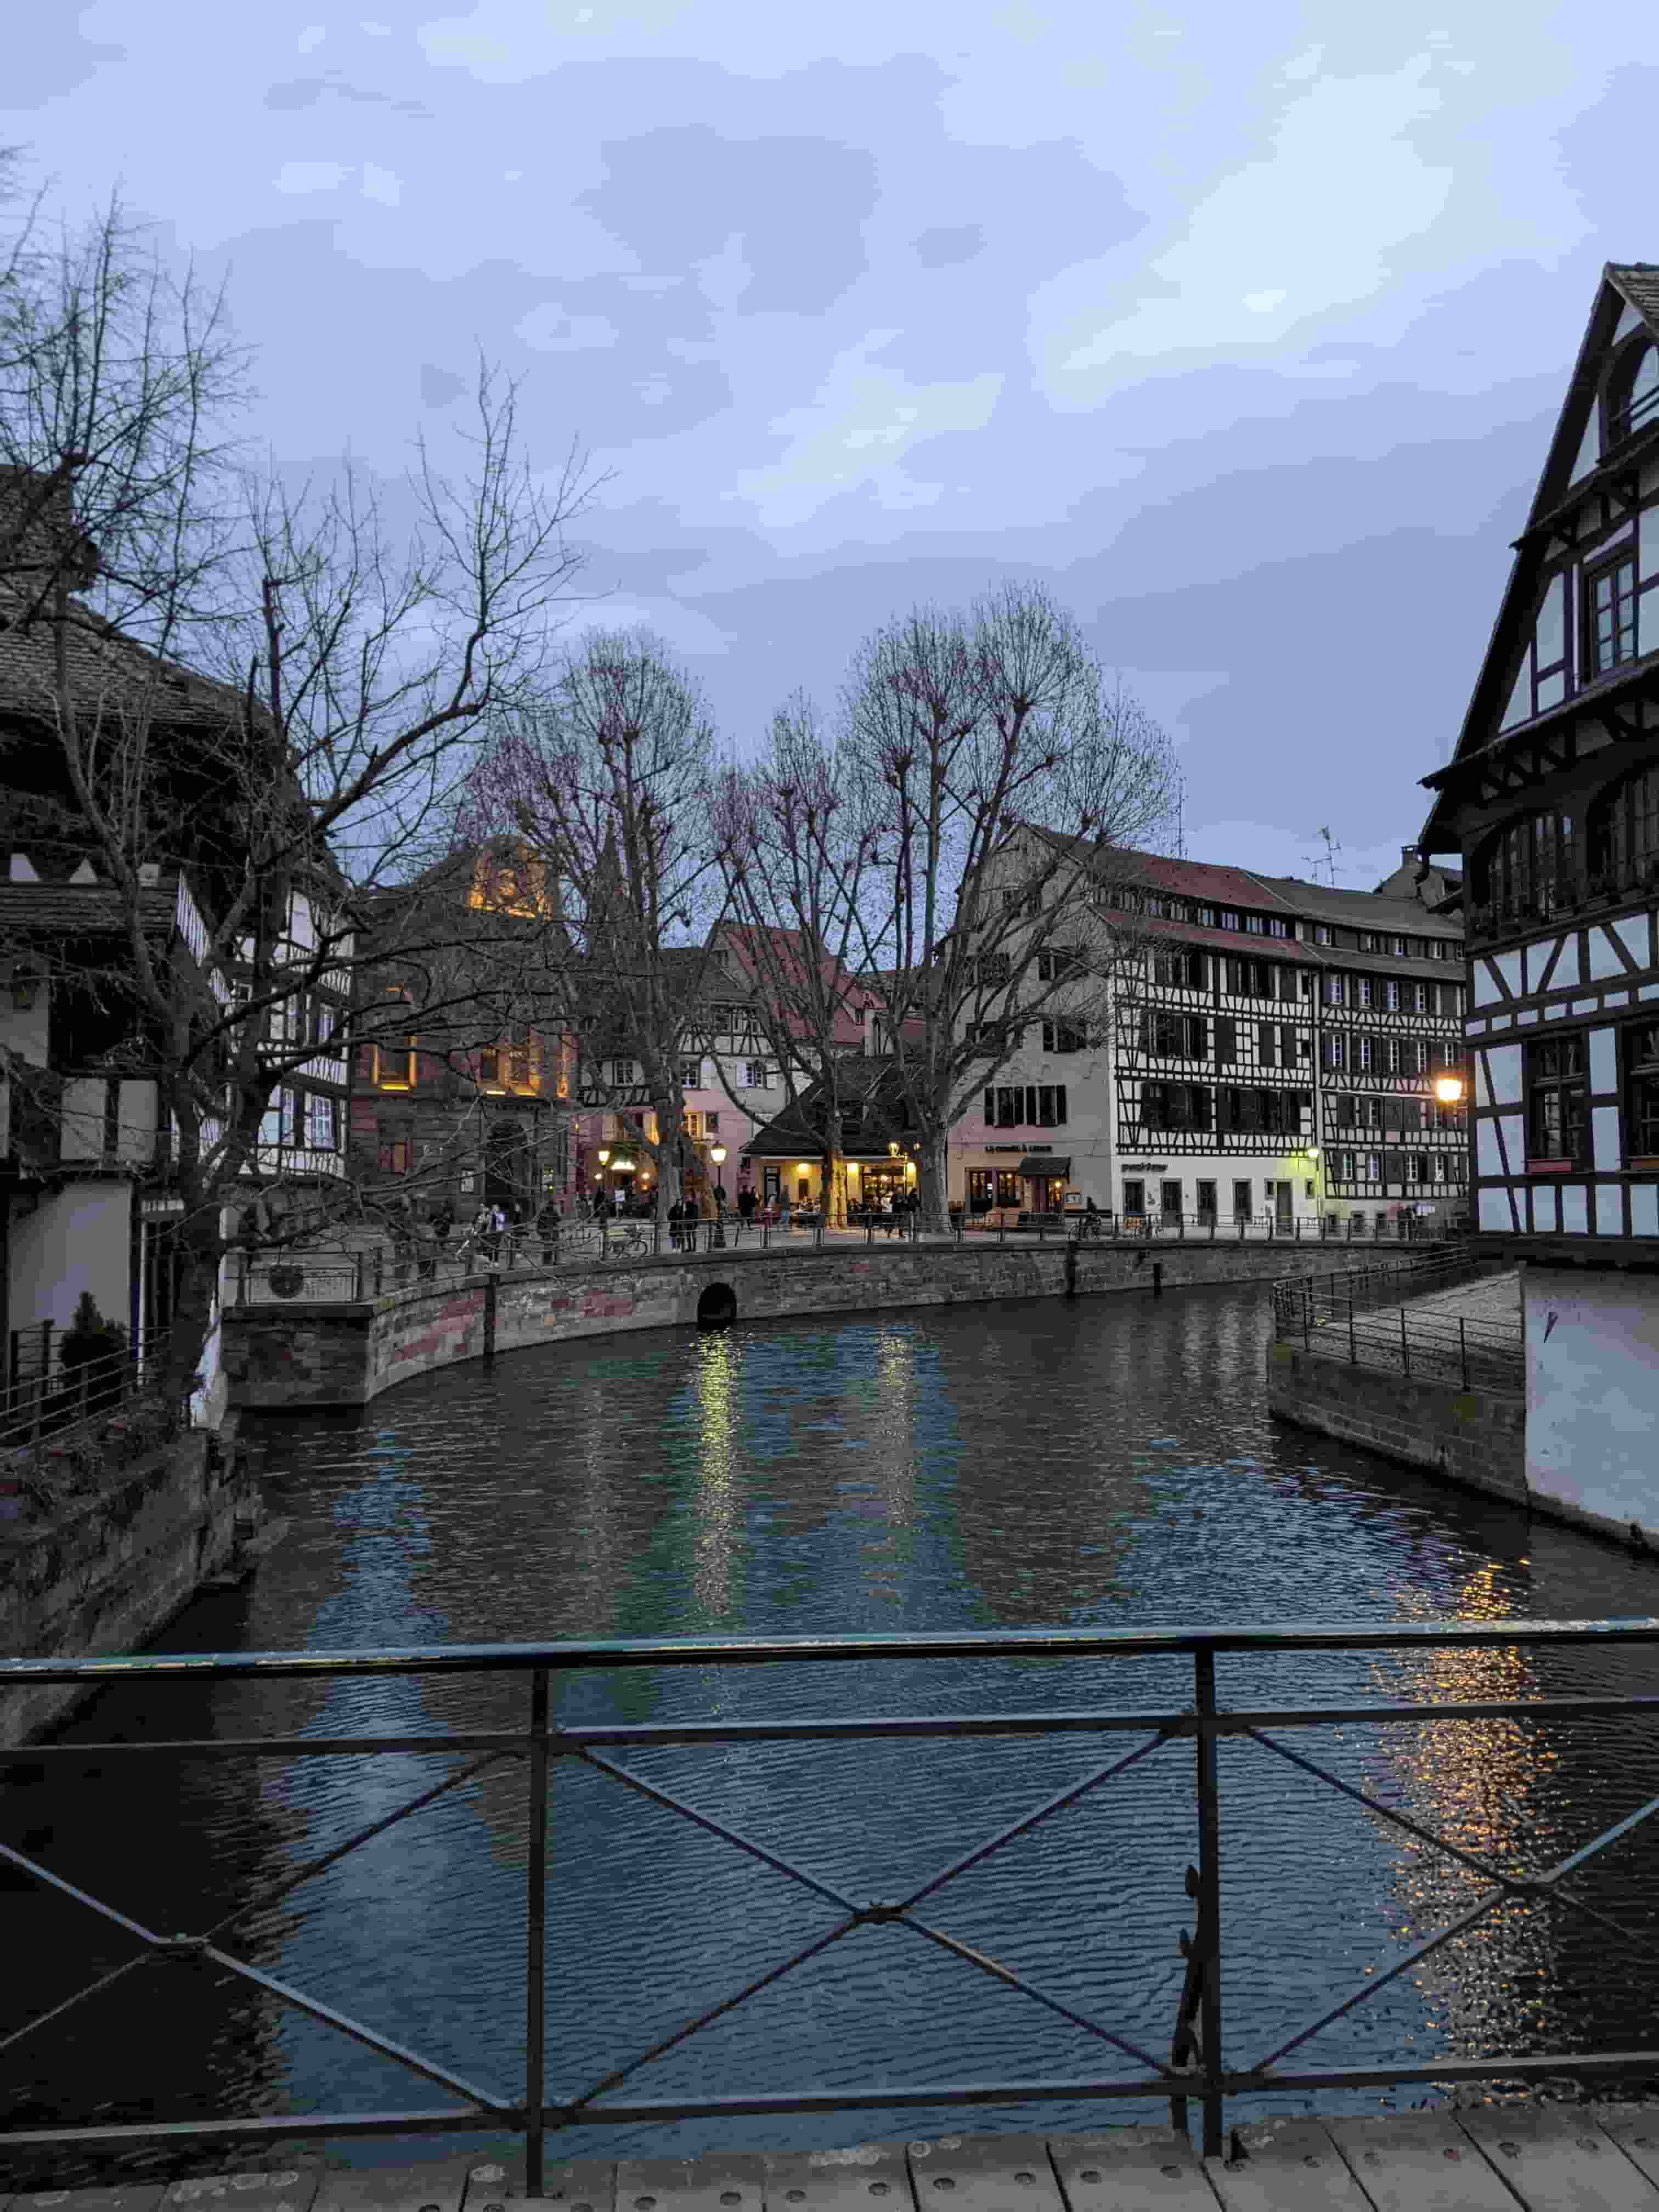 View across river in Strasbourg, France